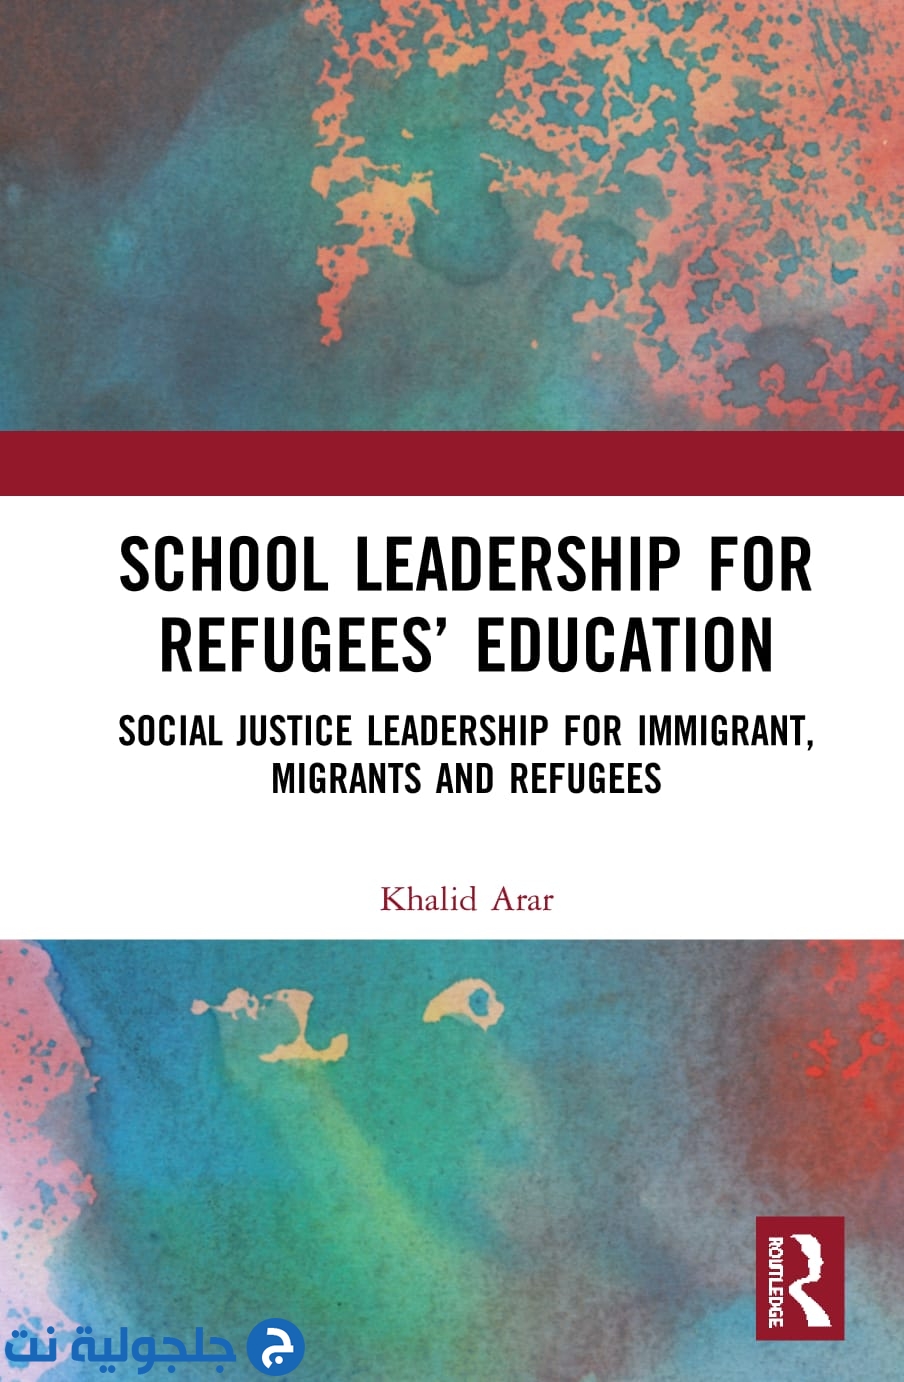 اصدار عالمي جديد للبروفسور خالد عرار، بعنوان: القيادة المدرسية لتعليم اللاجئين